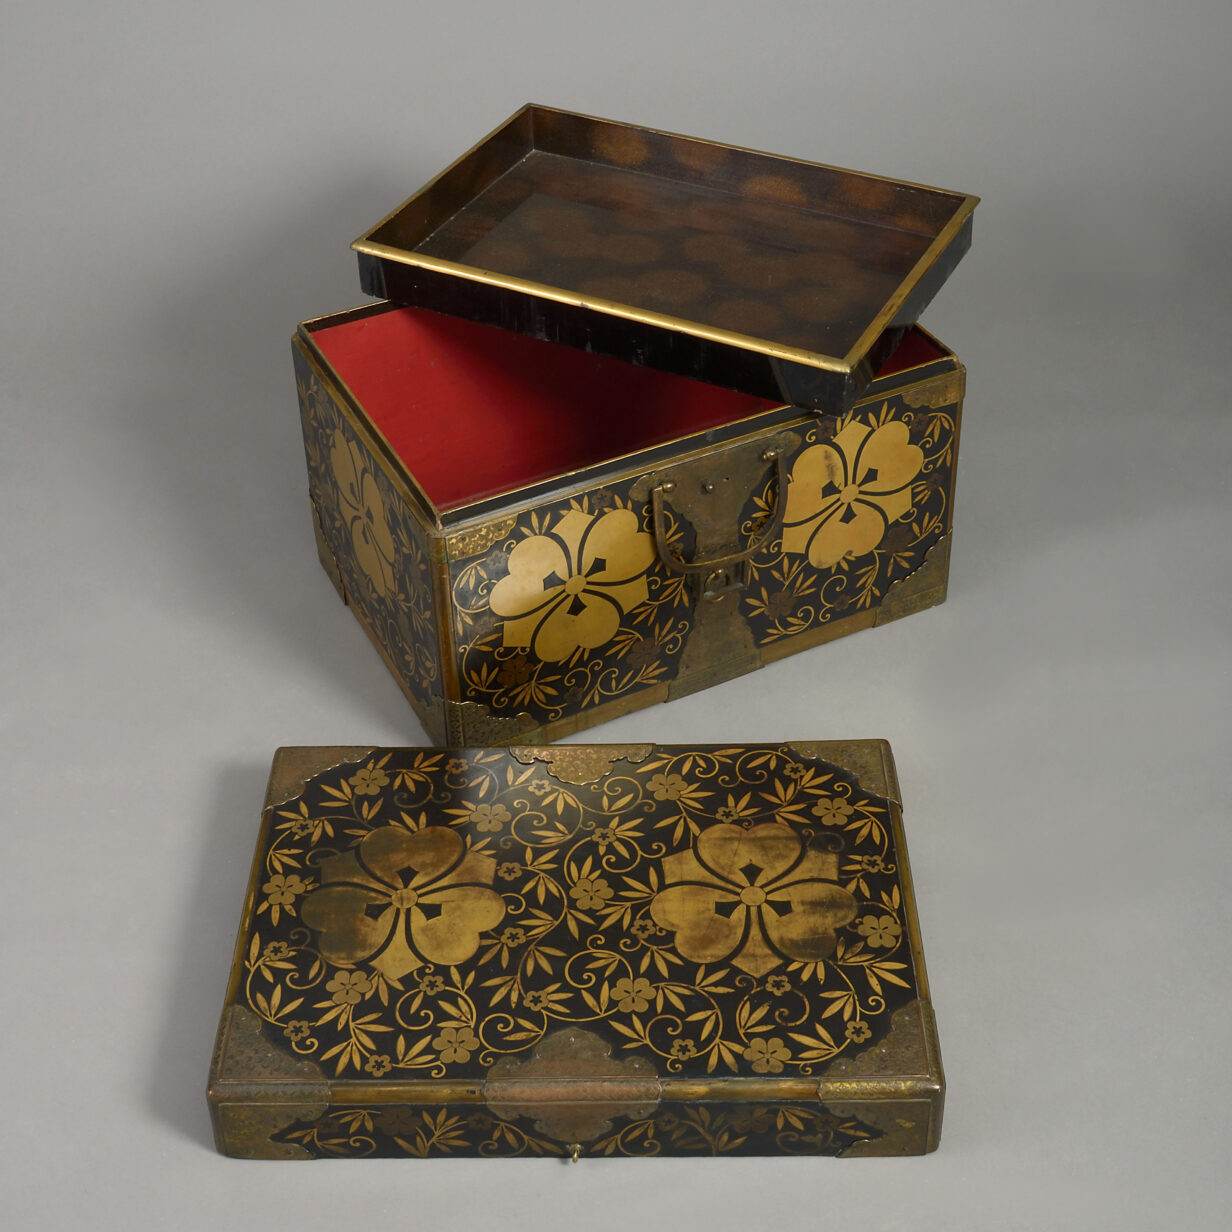 Japanese lacquer casket